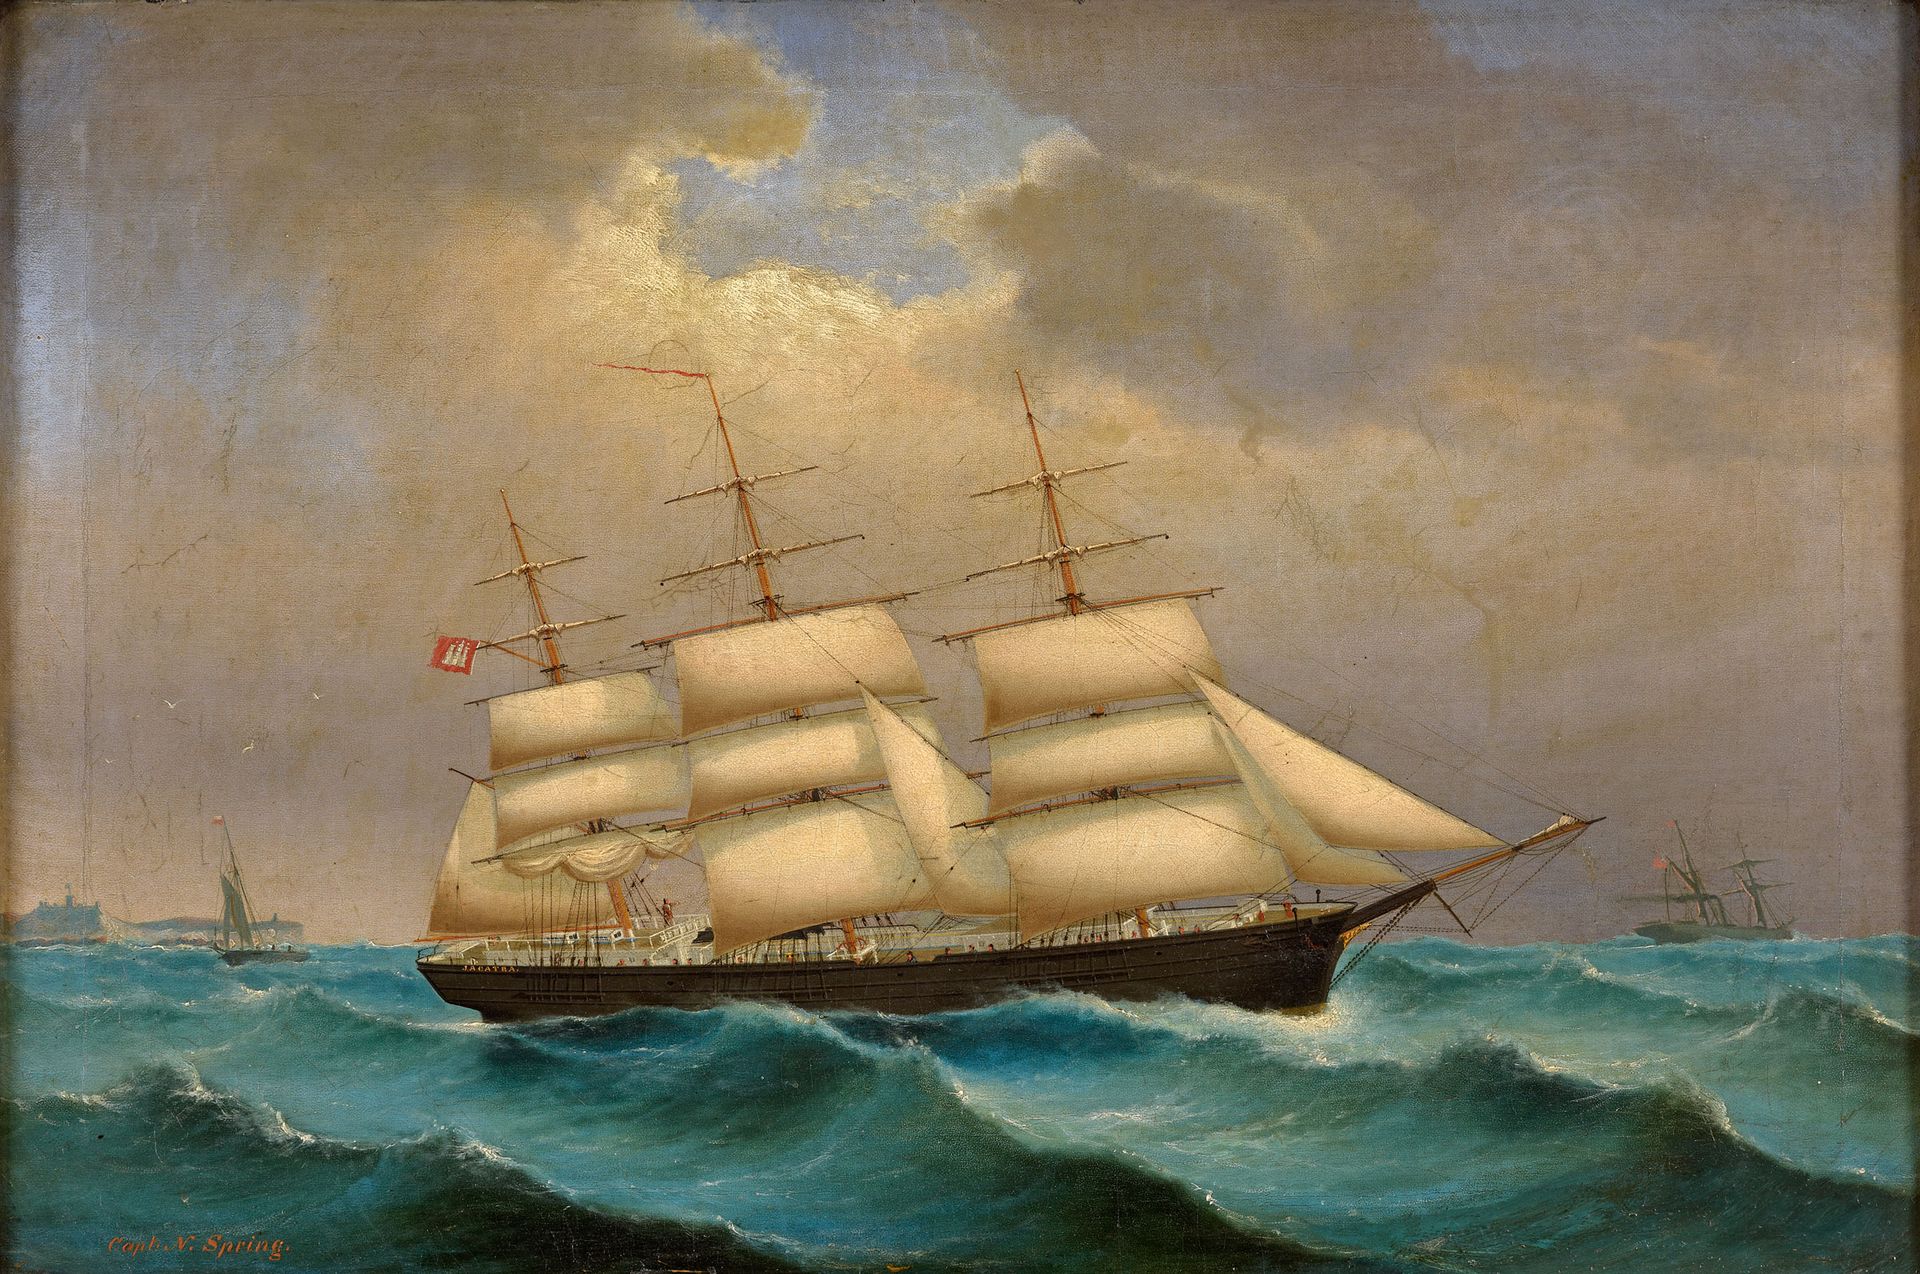 Kapitänsbild Cuadro del capitán del siglo XIX.
El Jacatra, Capitán N. Spring.
Ti&hellip;